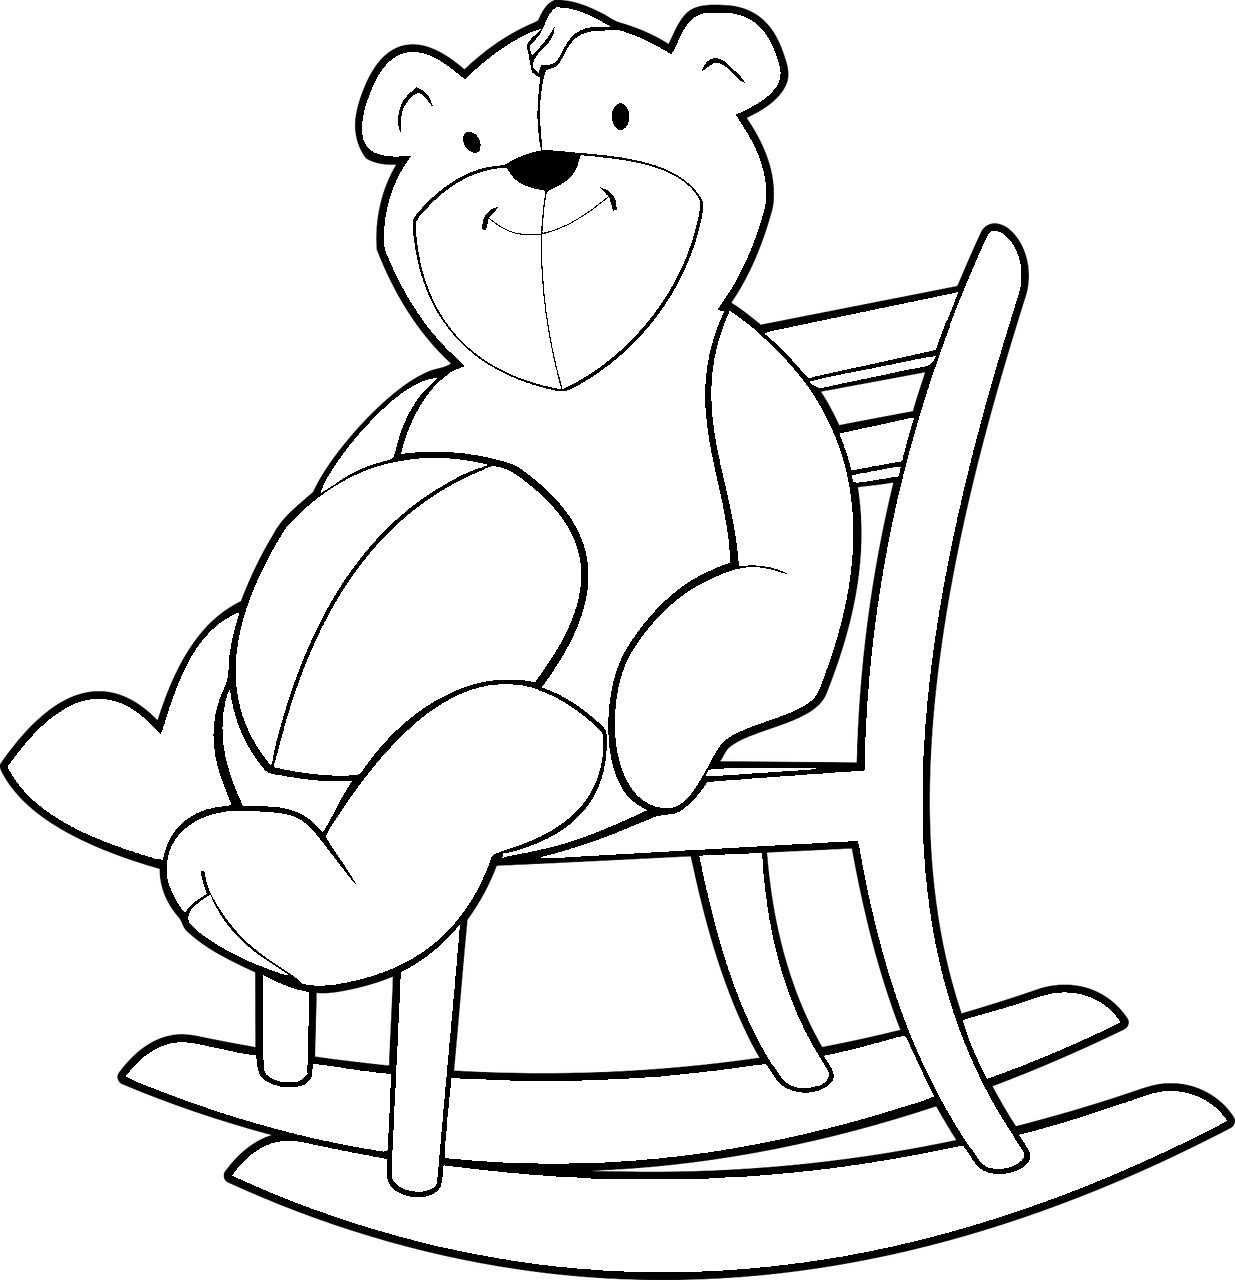 Disegno da colorare di orso sulla sedia a dondolo